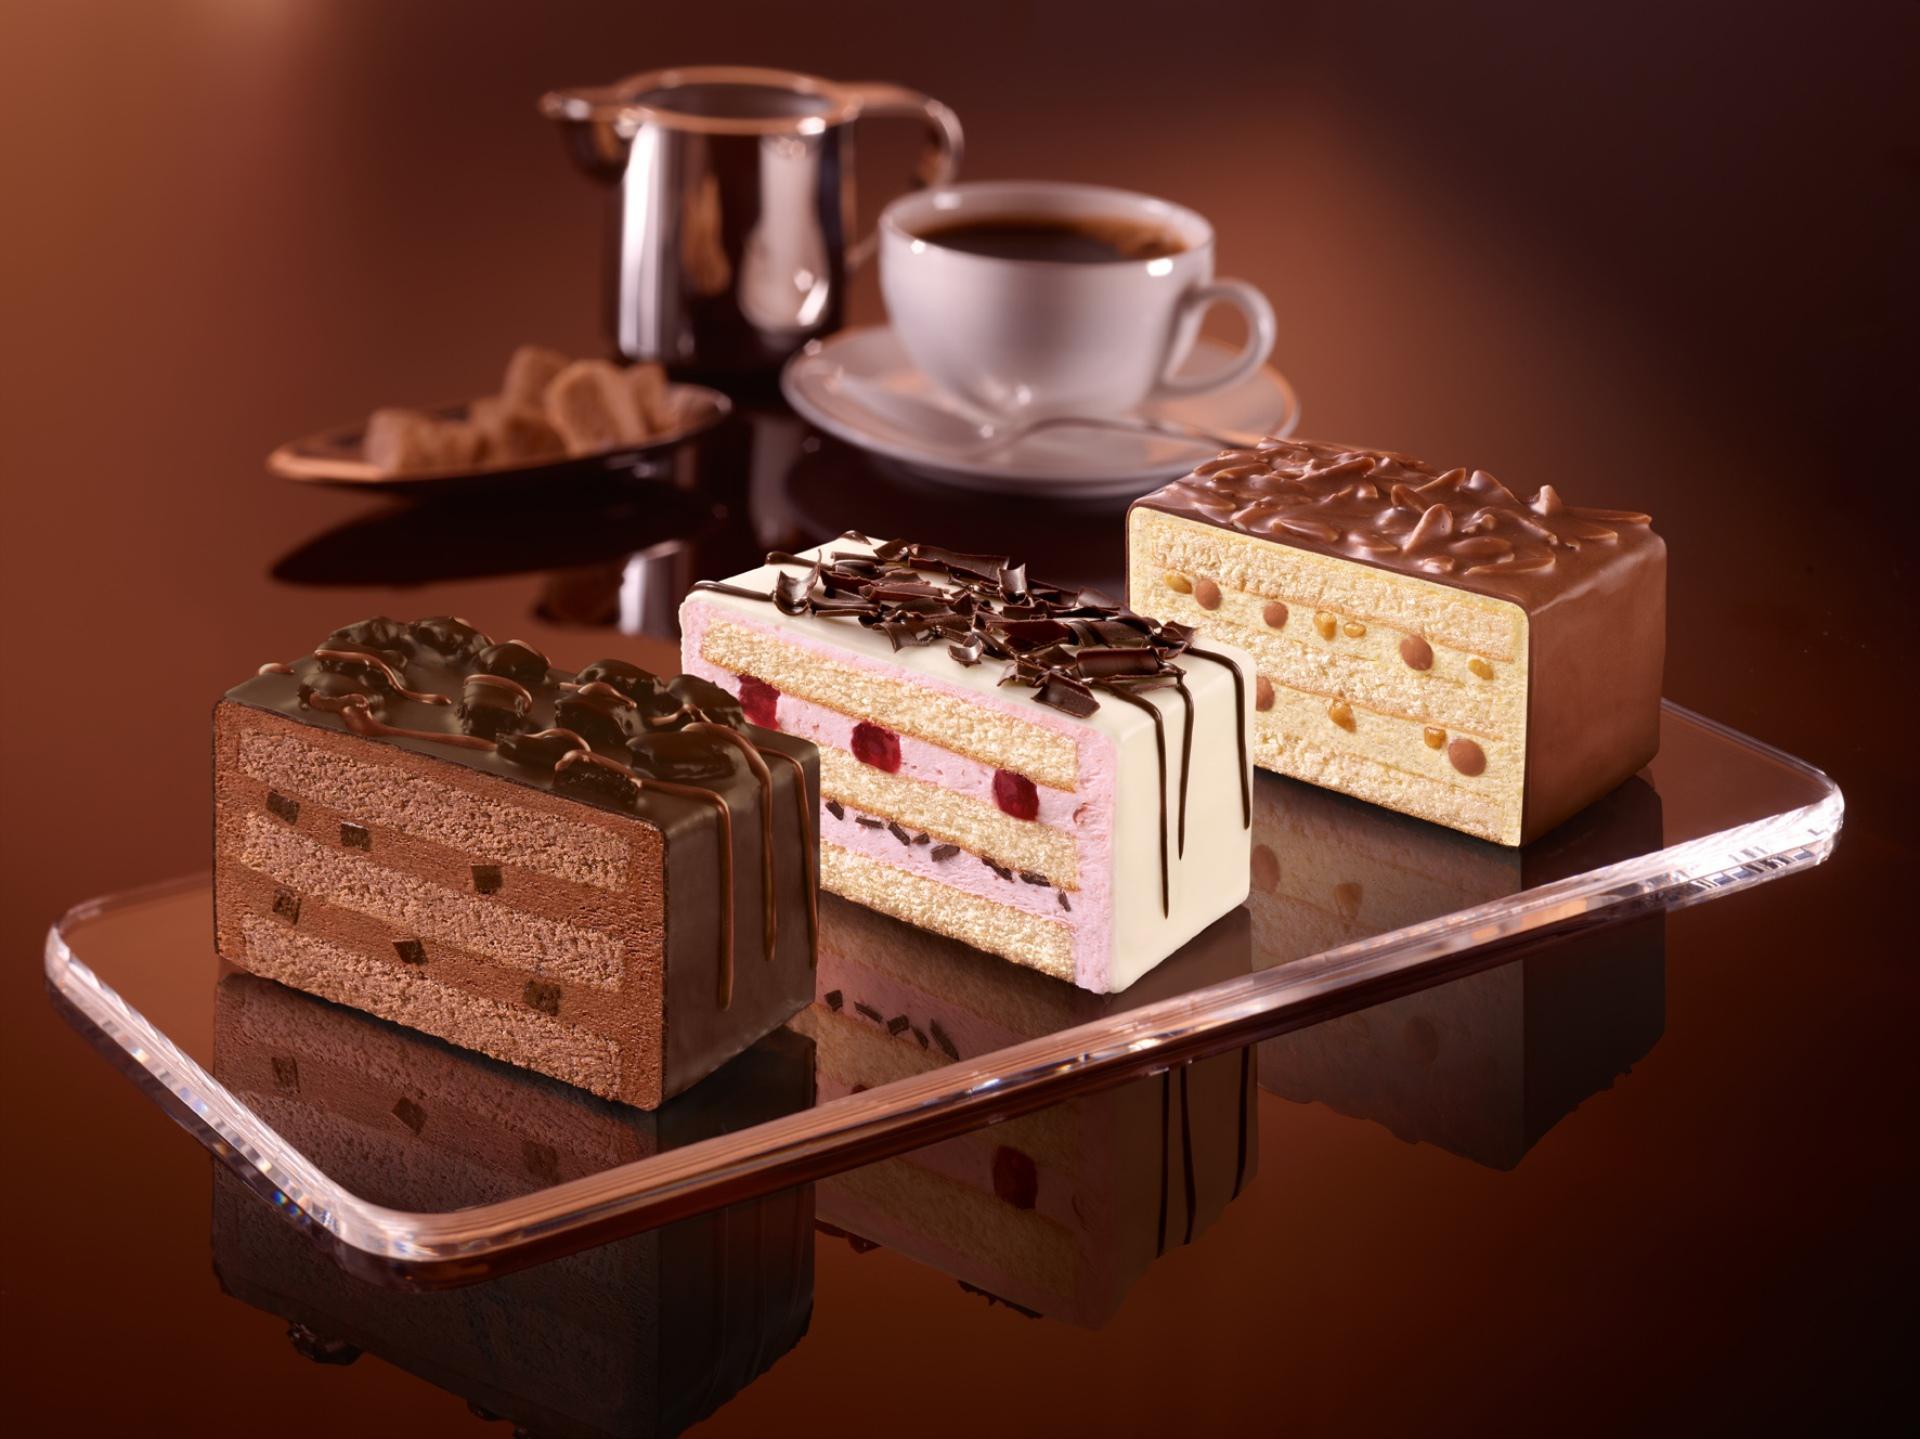 بک گراند جالب از سه نوع برش کیک با طعم های مختلف 